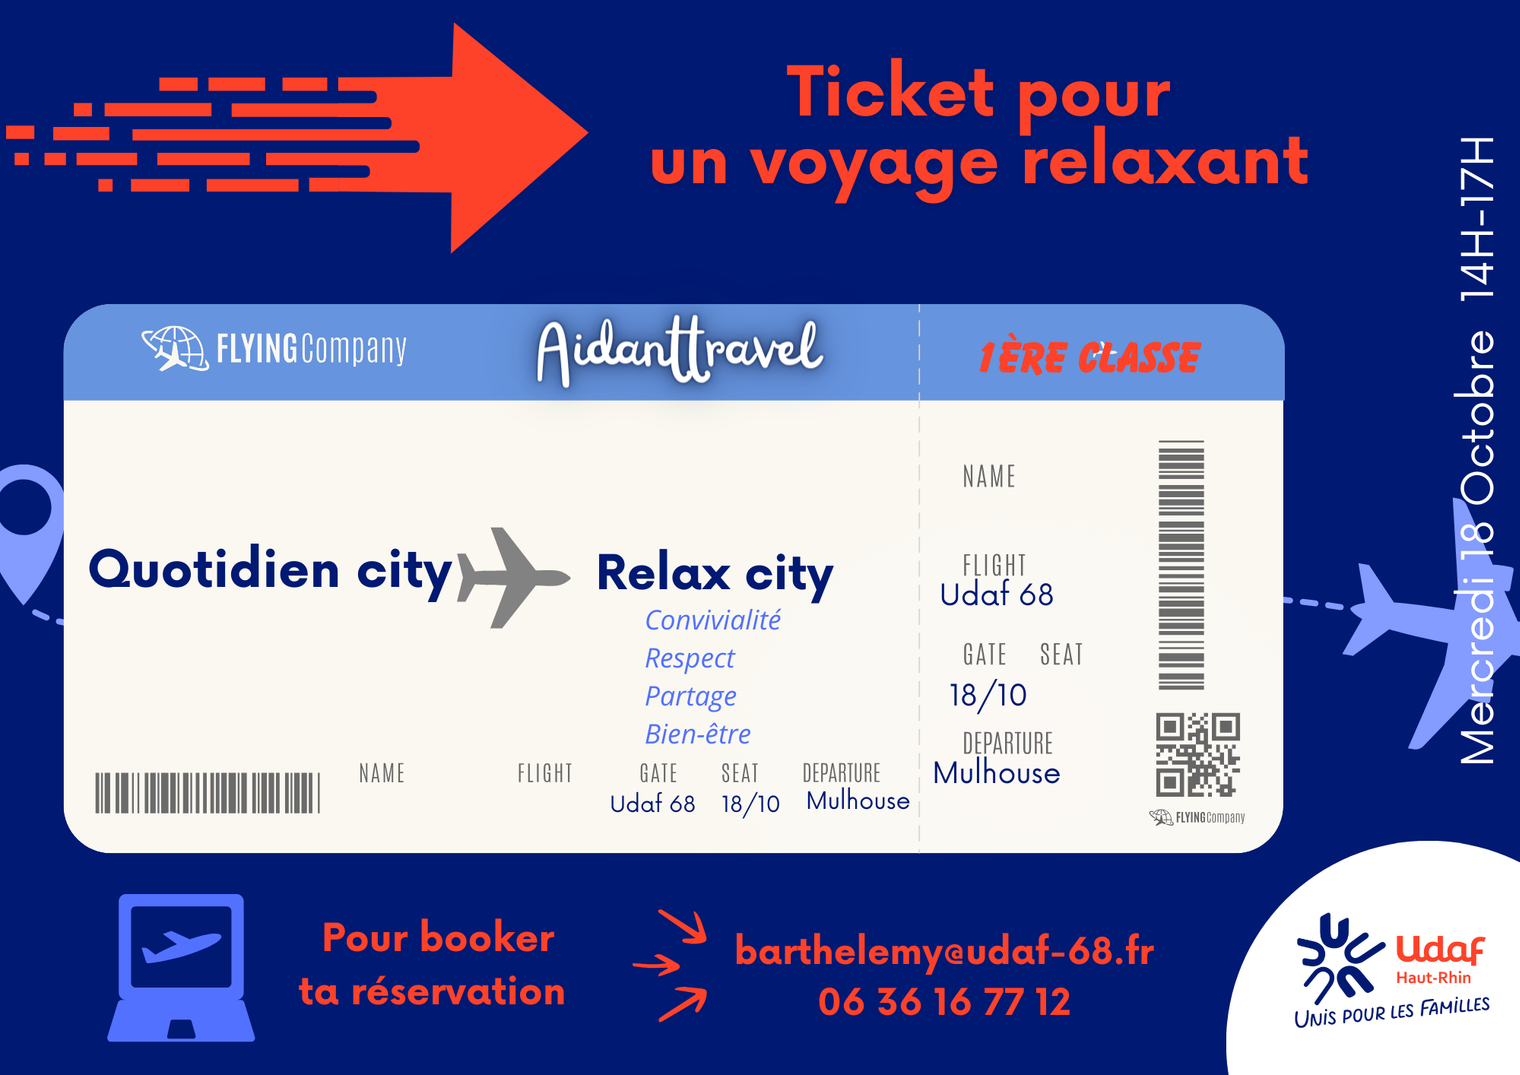 Ticket d'avion pour aller de Quotidien city à Relax City